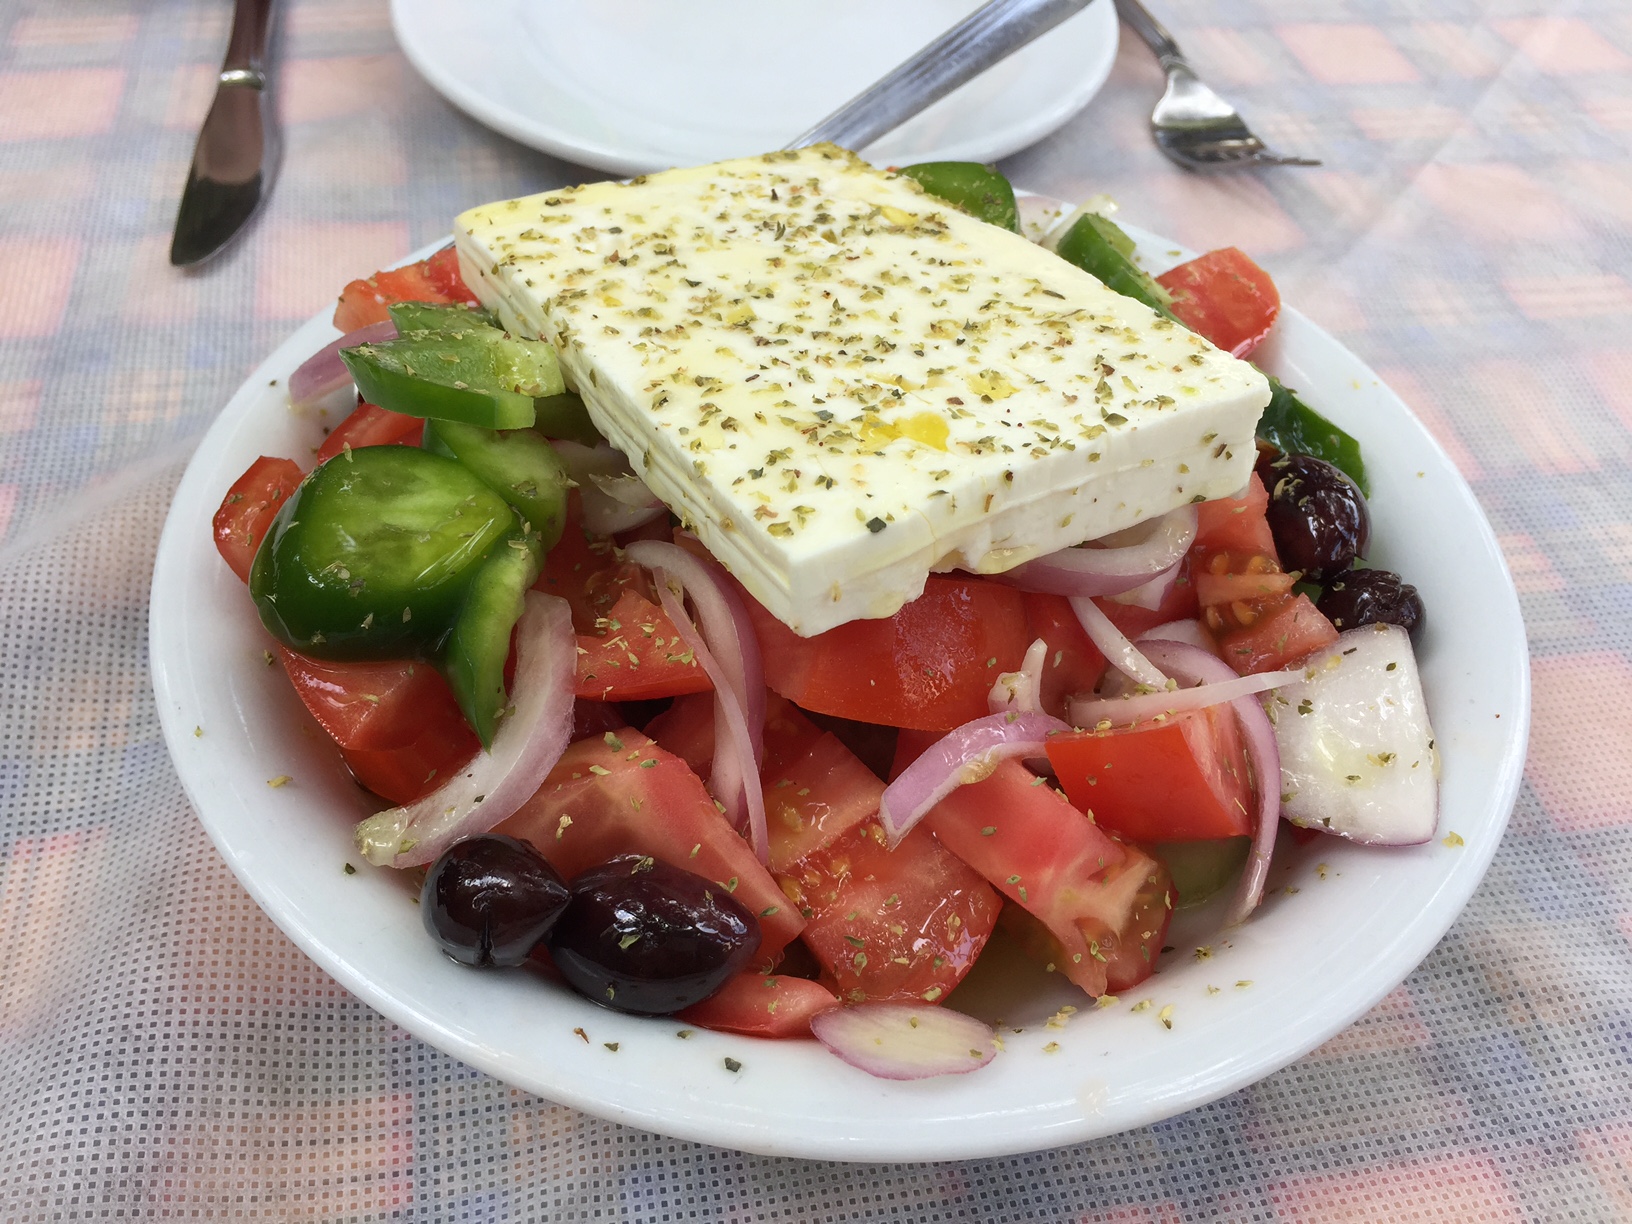 Αυτό το ήξερες; – Σε ποιο μέρος της Ελλάδας έφτιαξαν για πρώτη φορά χωριάτικη σαλάτα;